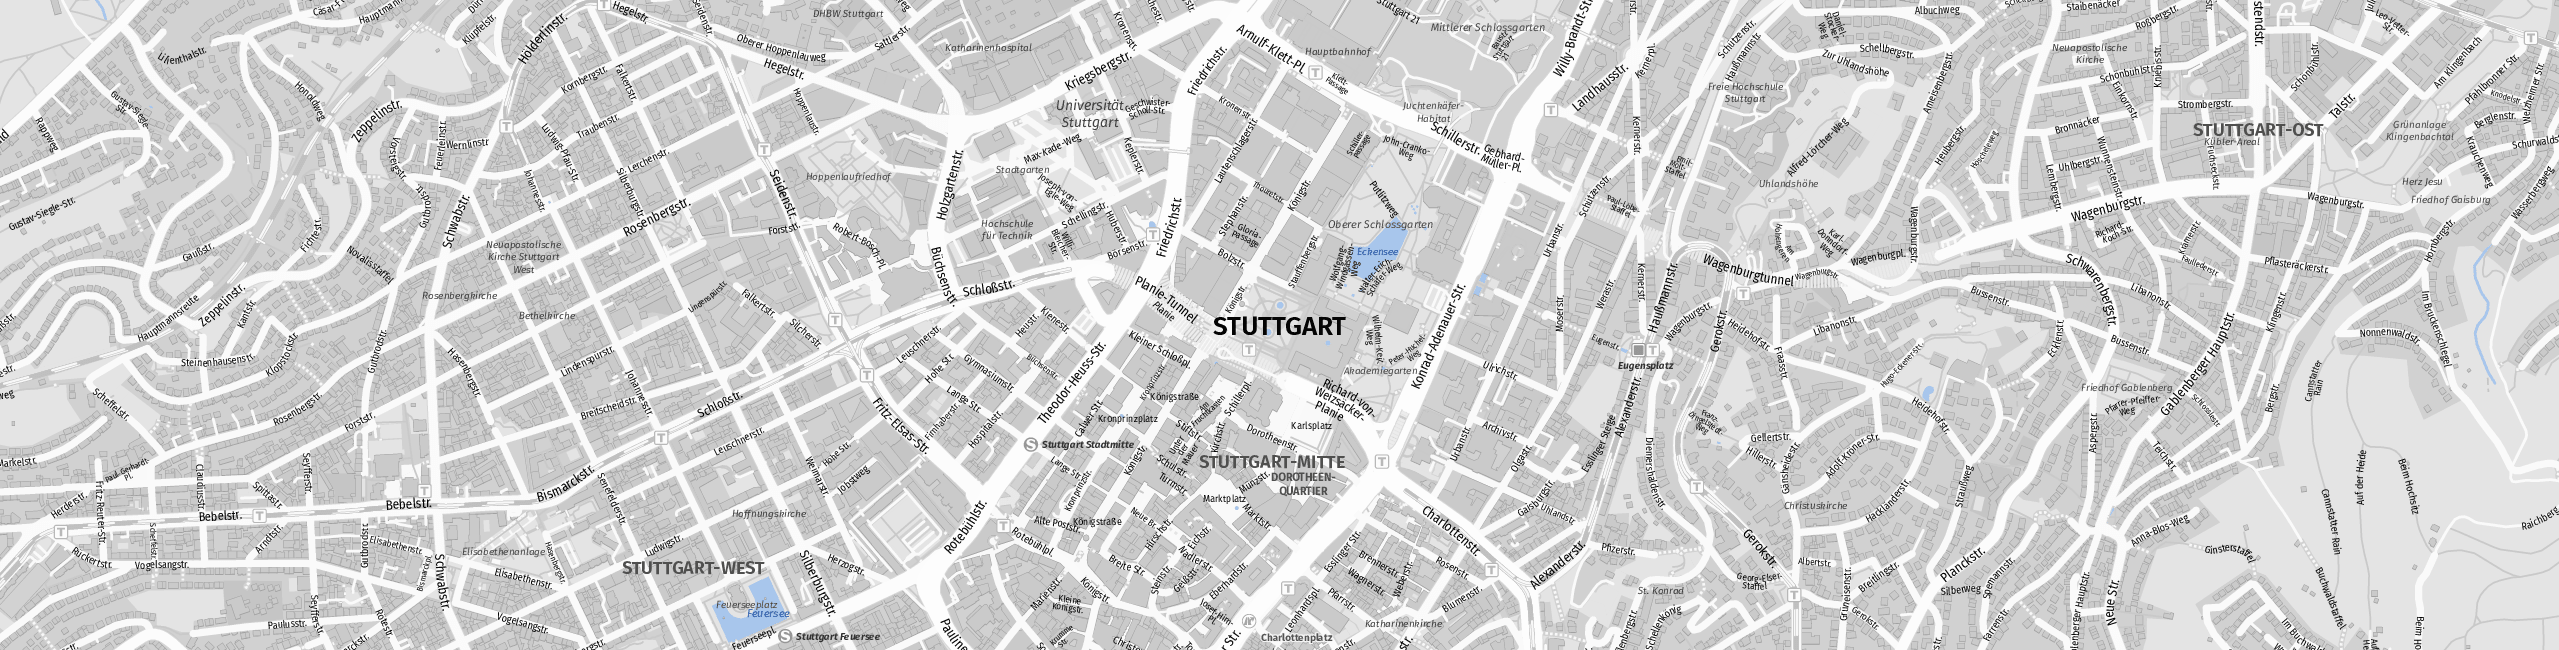 Stadtplan Stuttgart zum Downloaden.